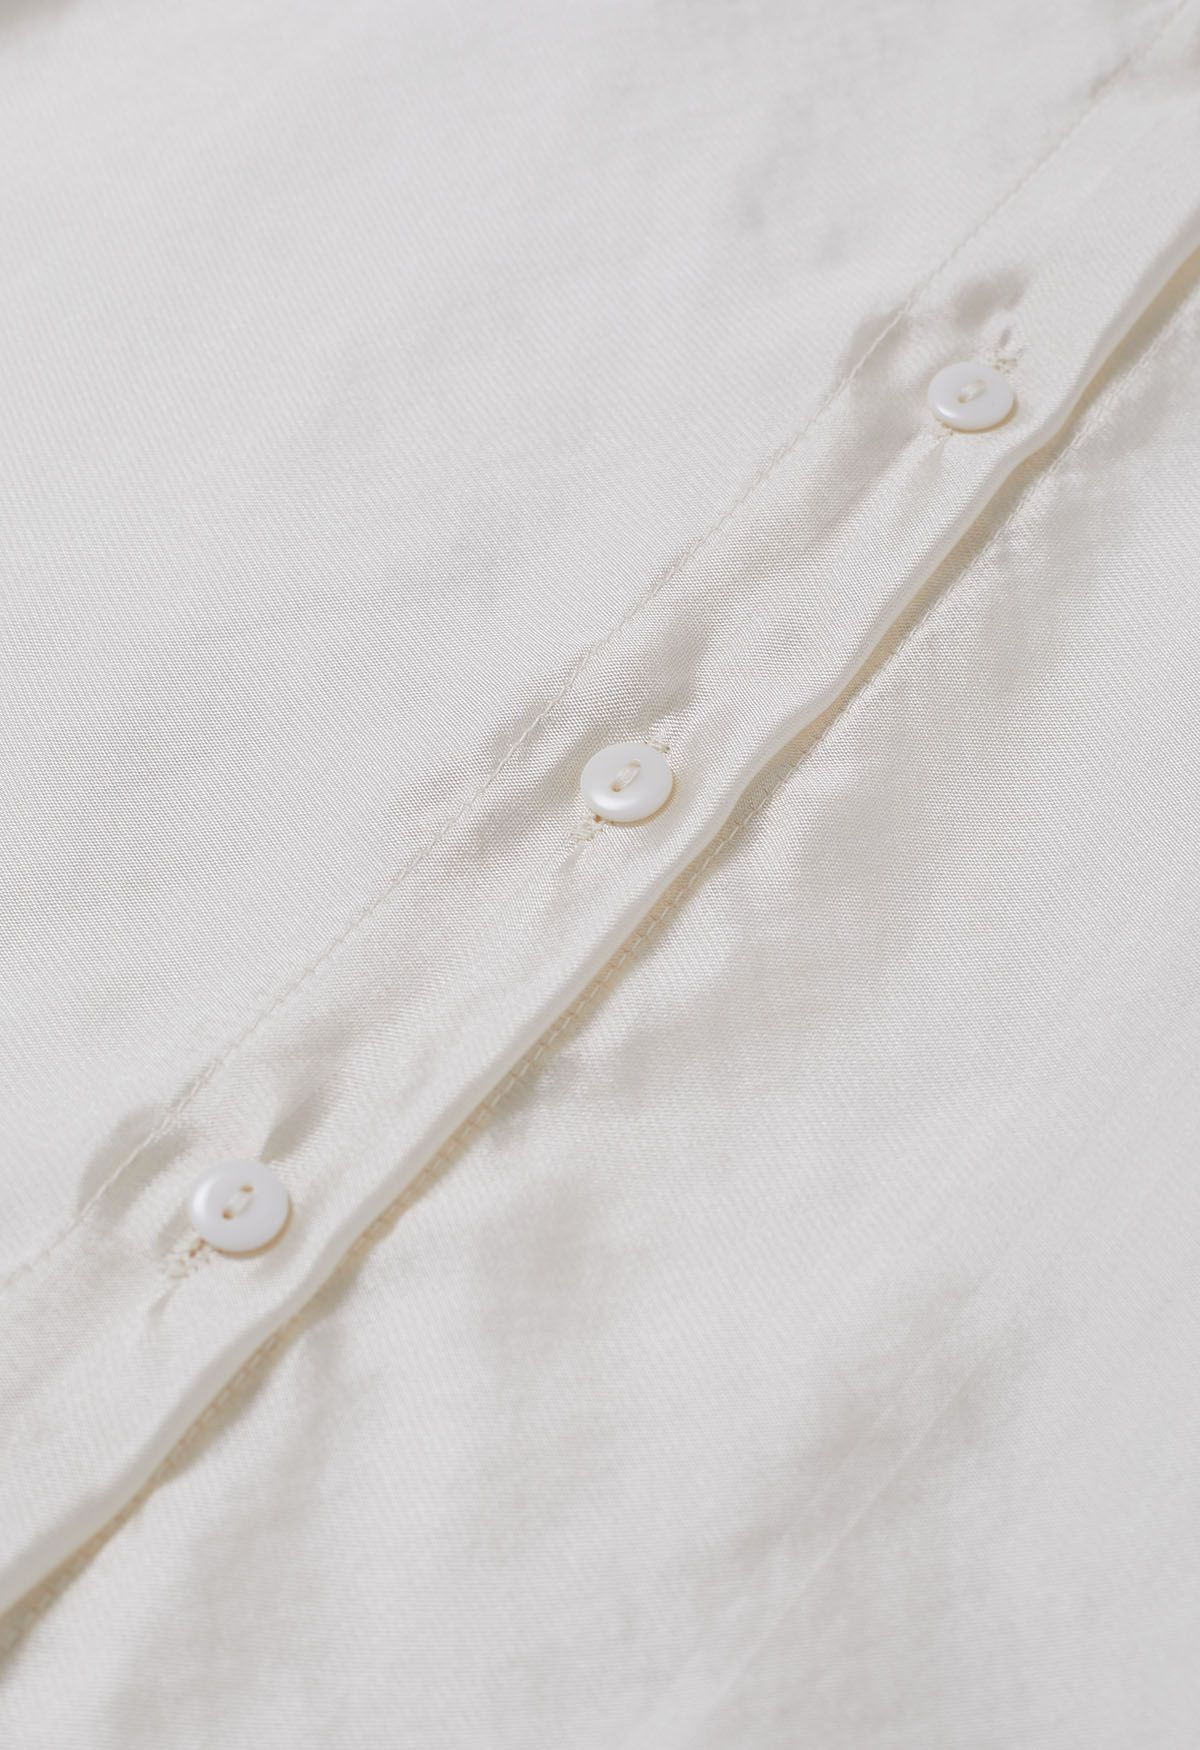 Camisa transparente elegante con mangas abullonadas y lazo en color crema